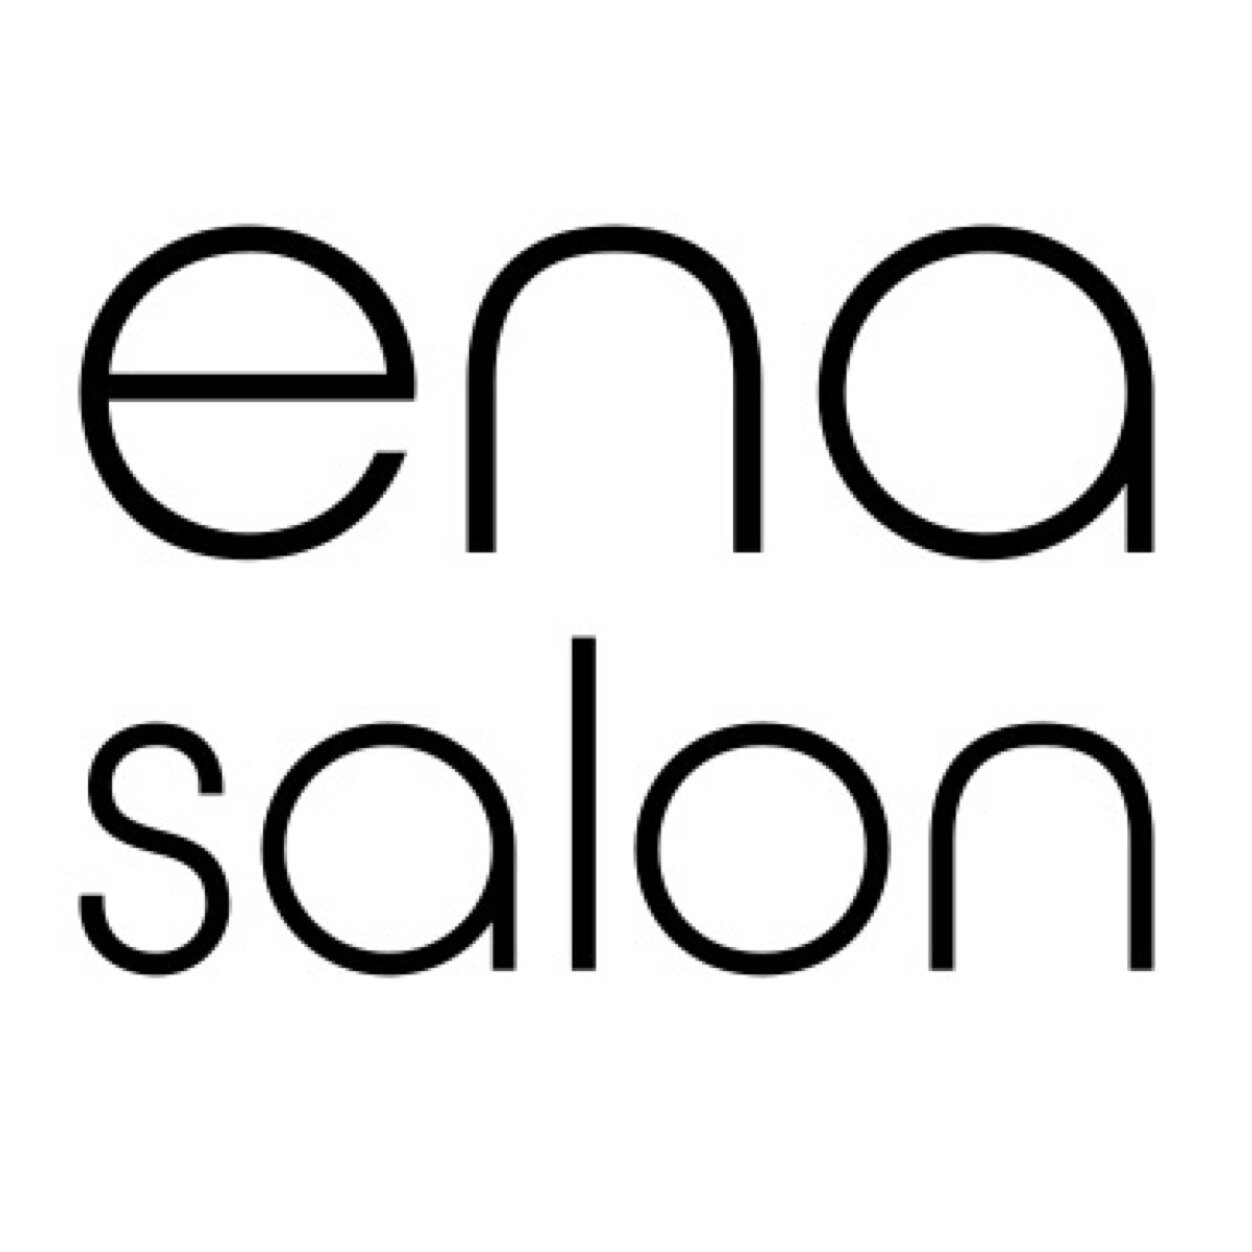 Ena Salon